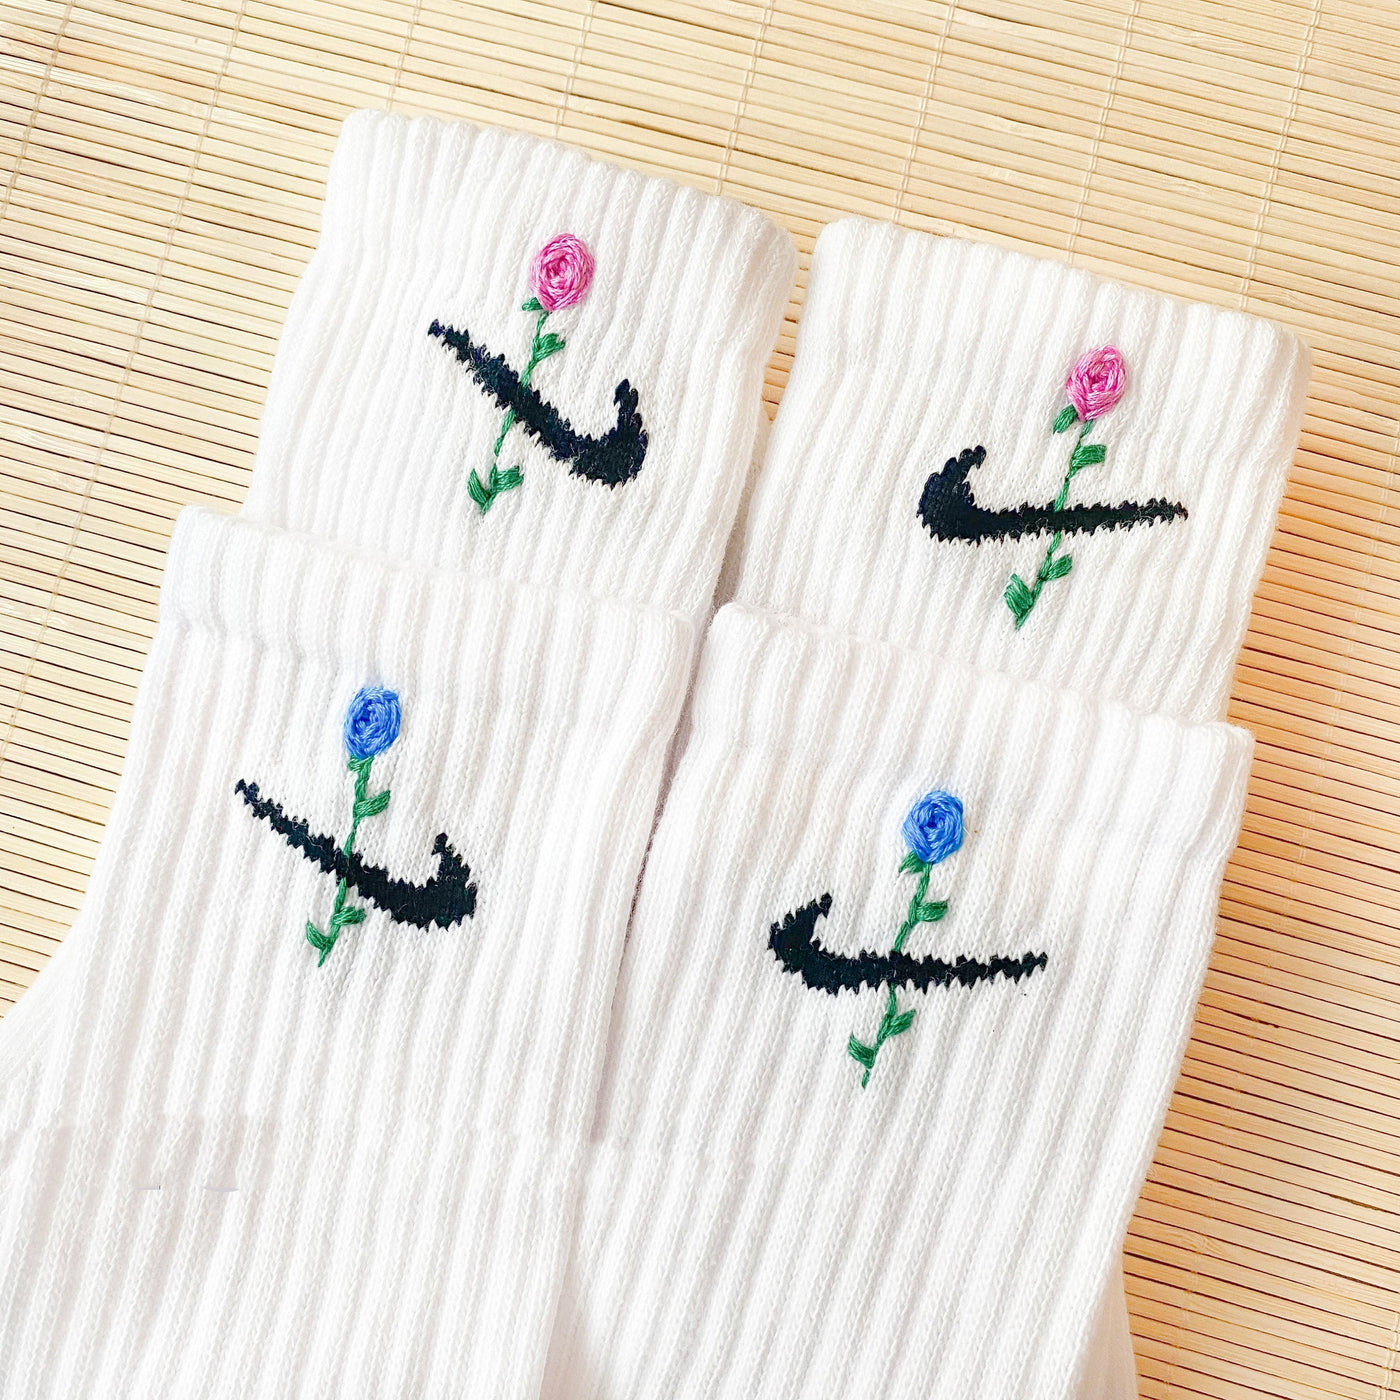 Embroidery Rose Flower Socks